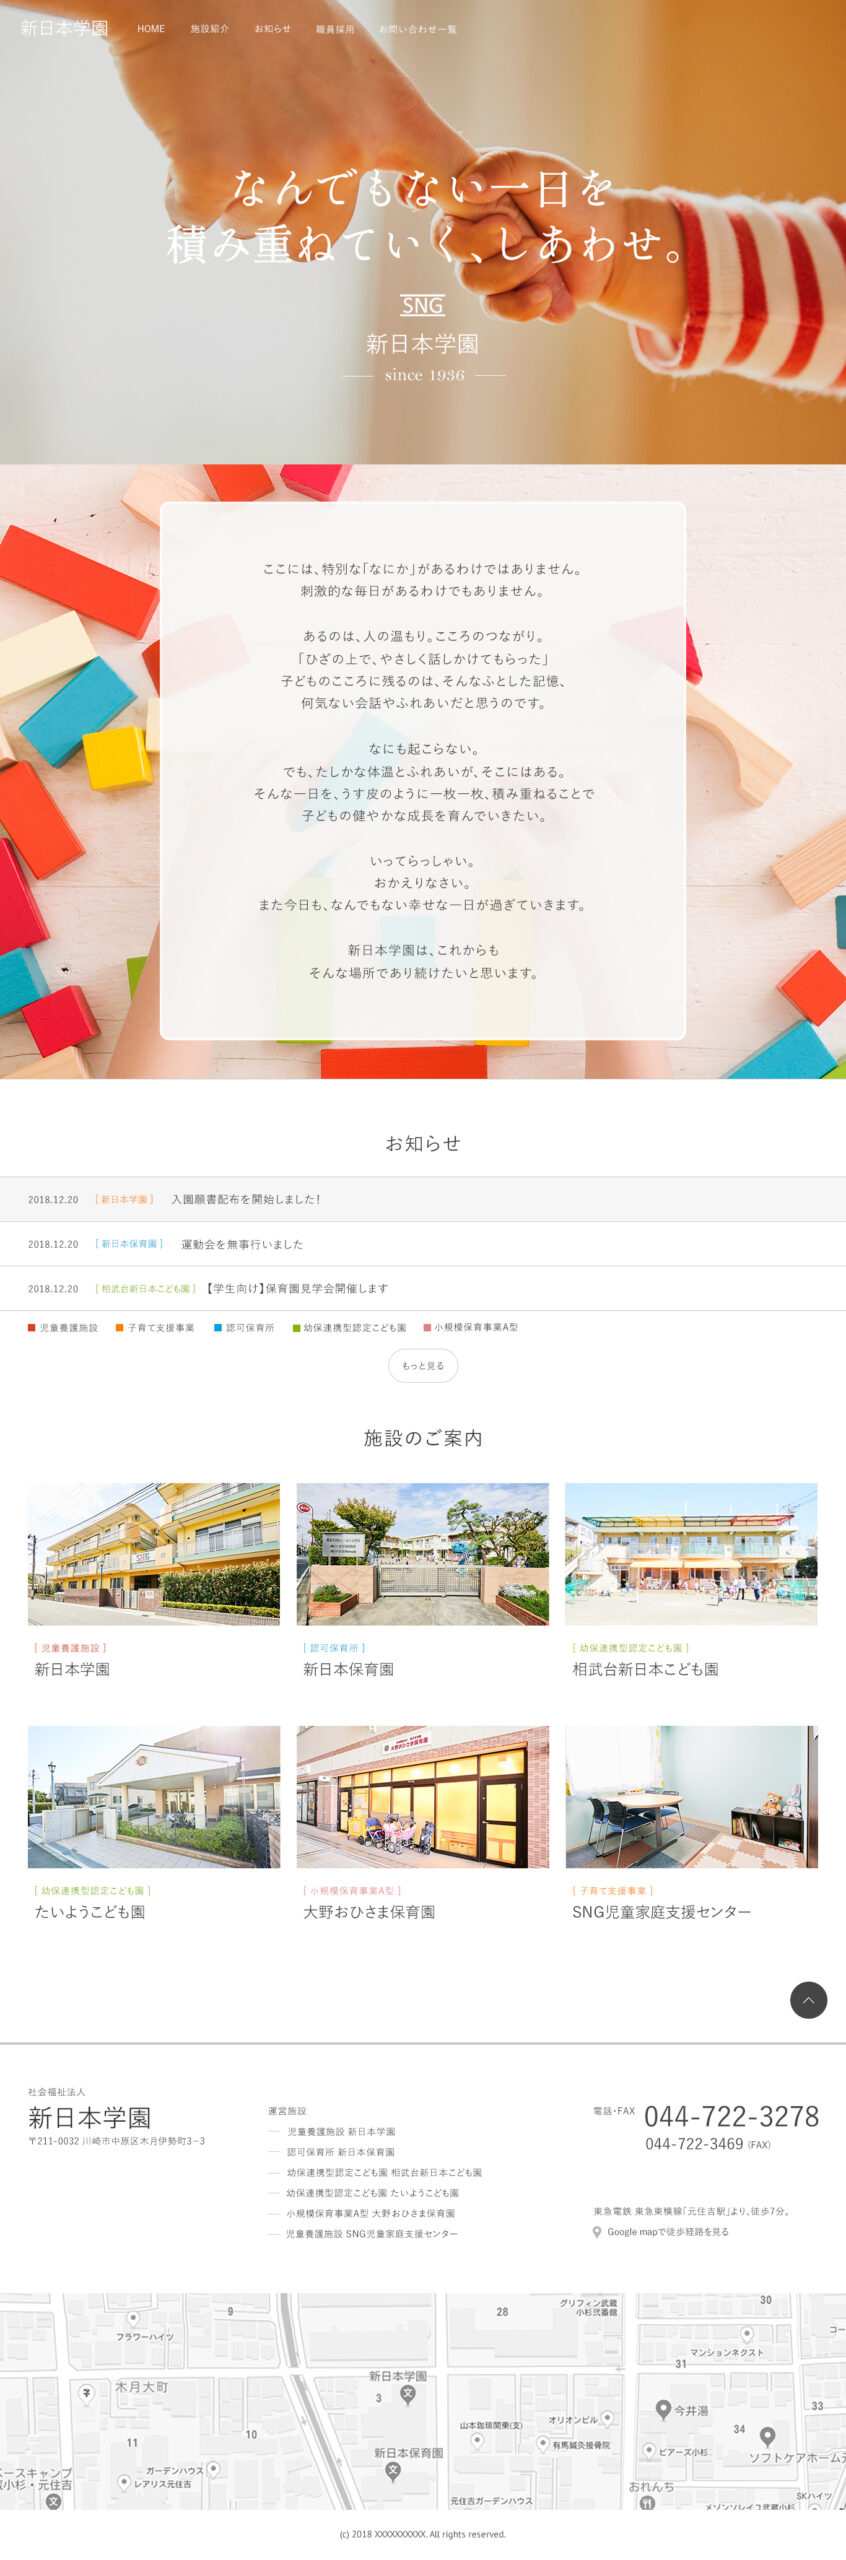 社会福祉法人 新日本学園 新日本学園ウェブサイトのデザインを担当しました。
